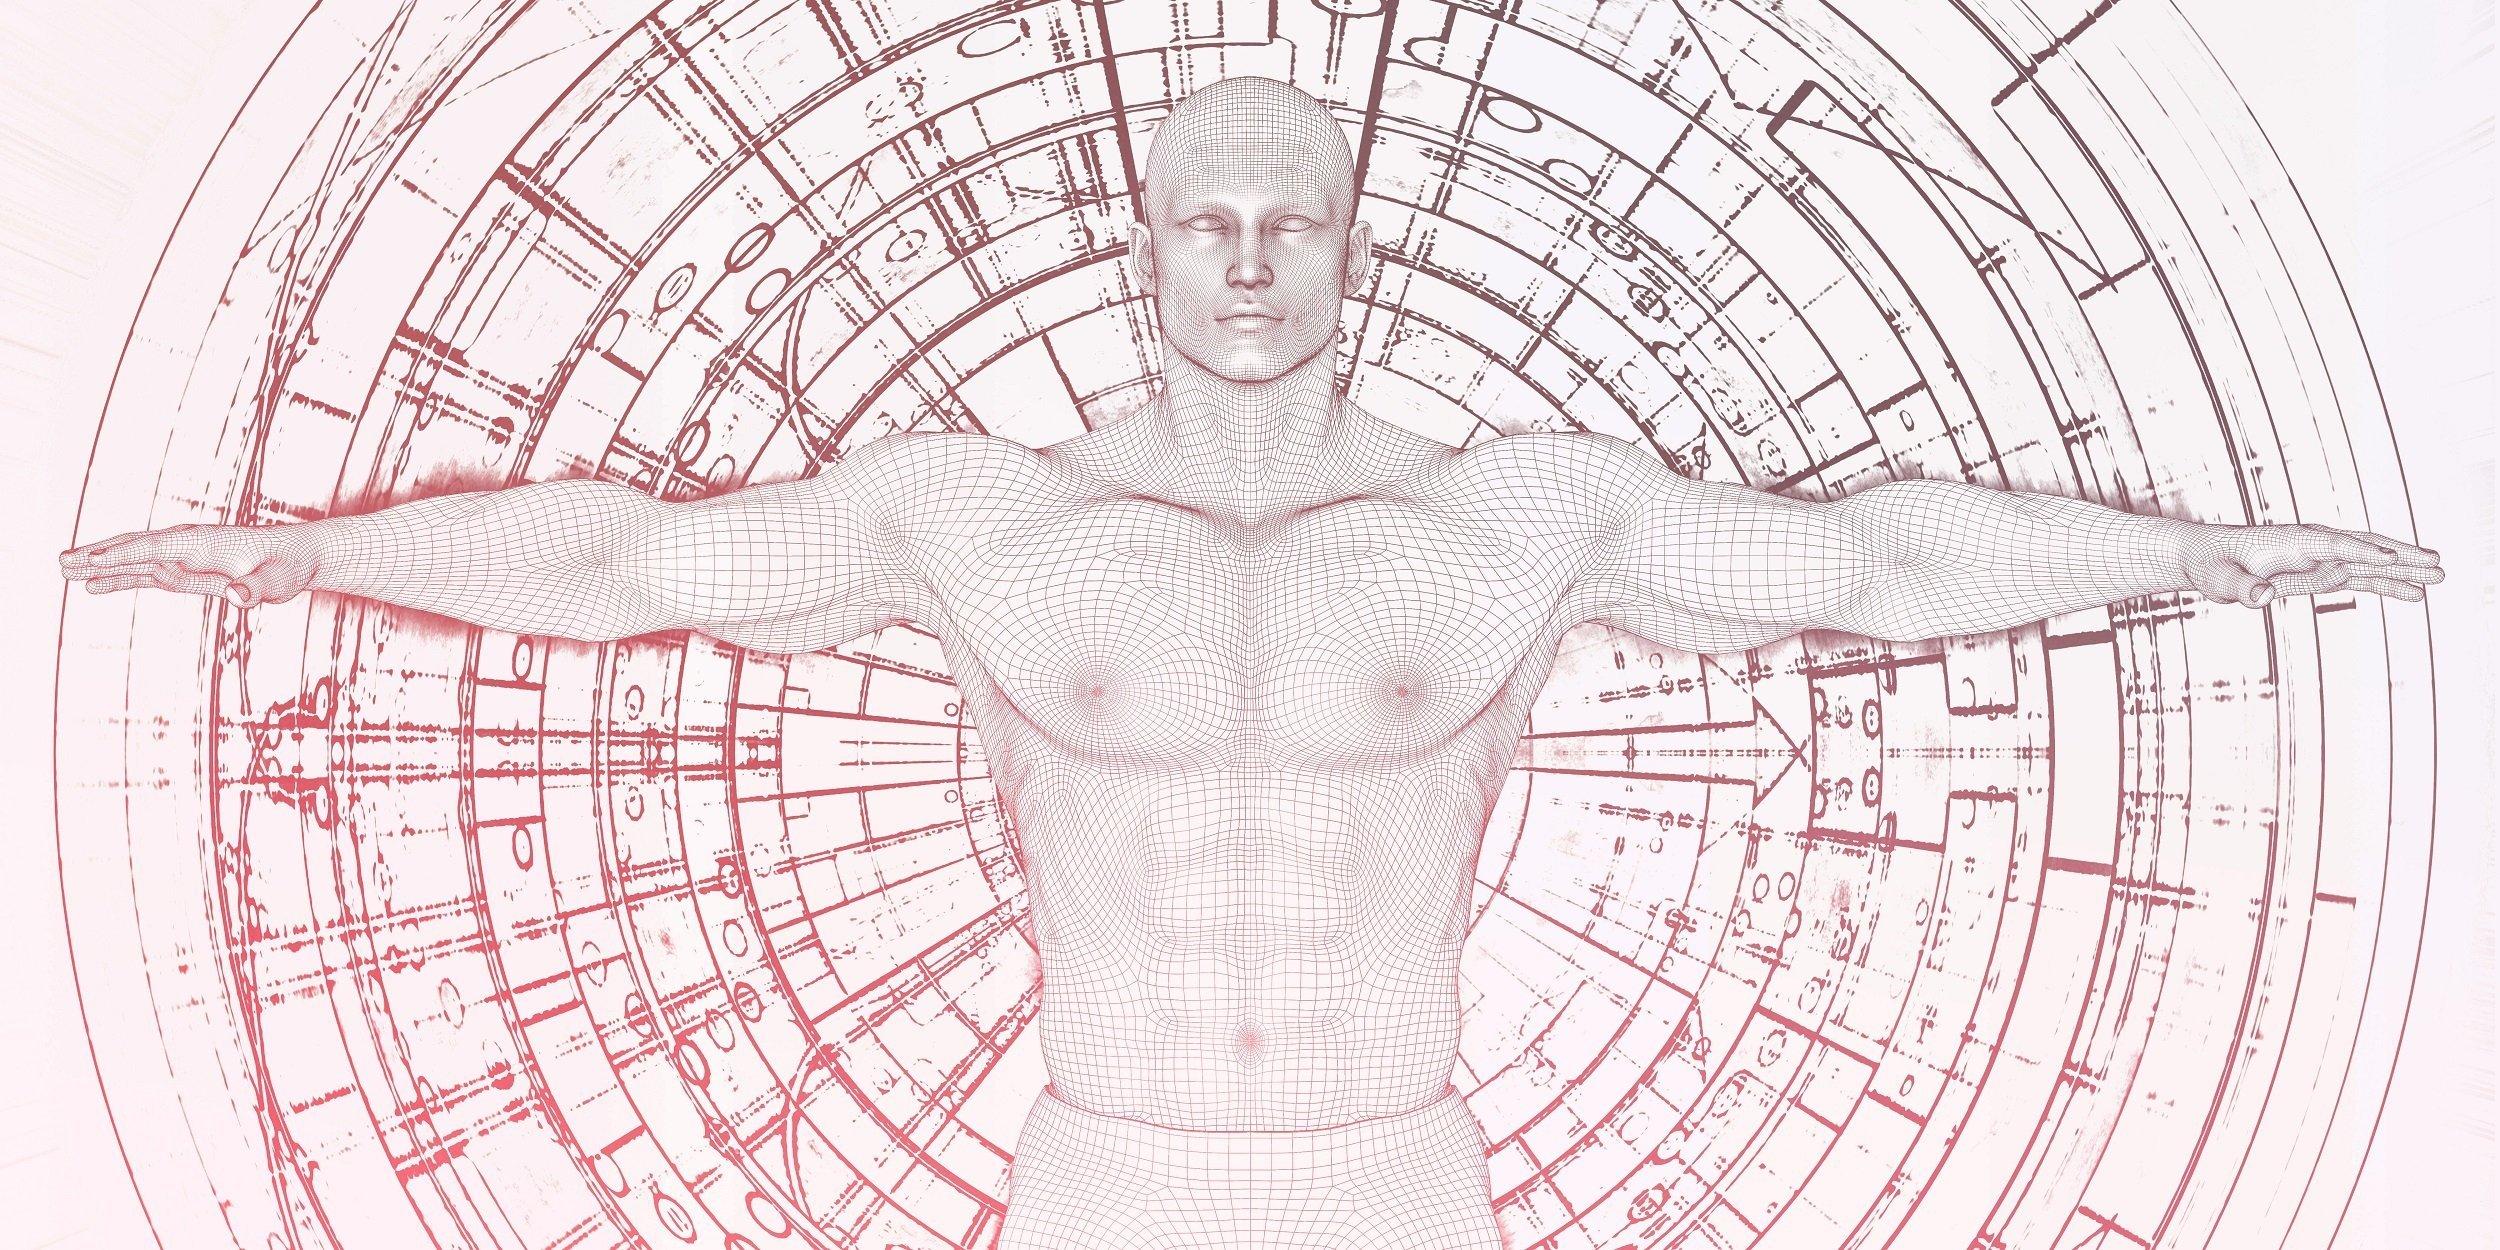 Eine futuristische Grafik zeigt einen Mann mit ausgestreckten Armen vor einem Hintergrund voller kreisförmig angeordneter technischer Zeichnungen.